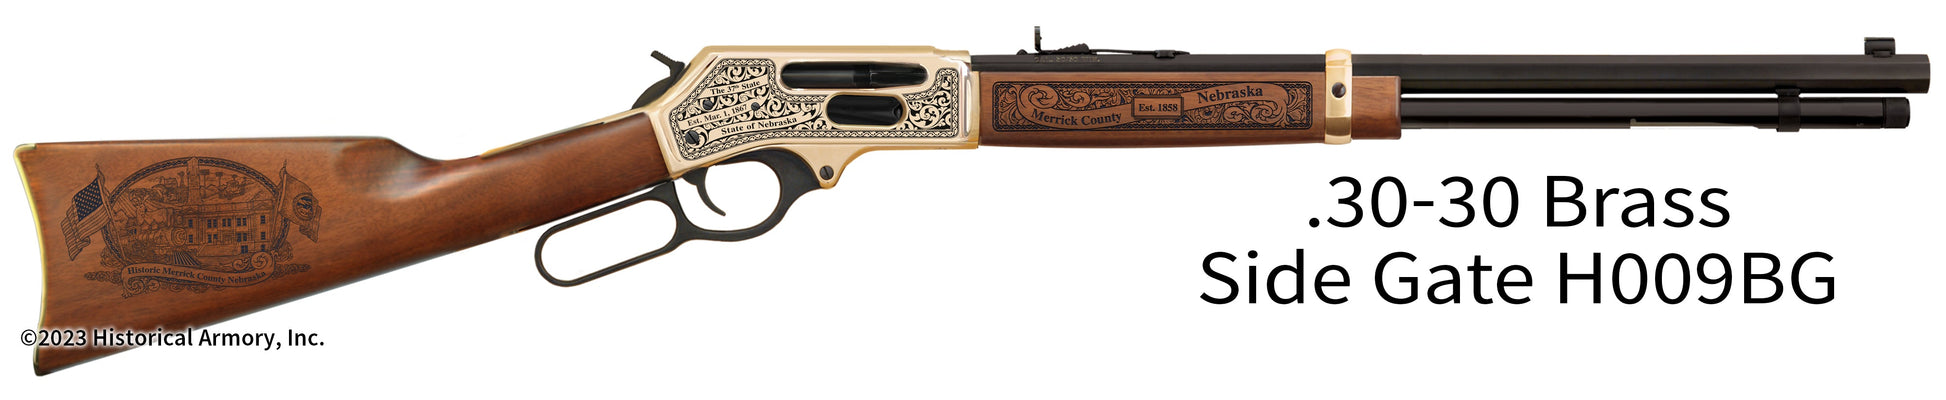 Merrick County Nebraska Engraved Henry .30-30 Brass Side Gate Rifle